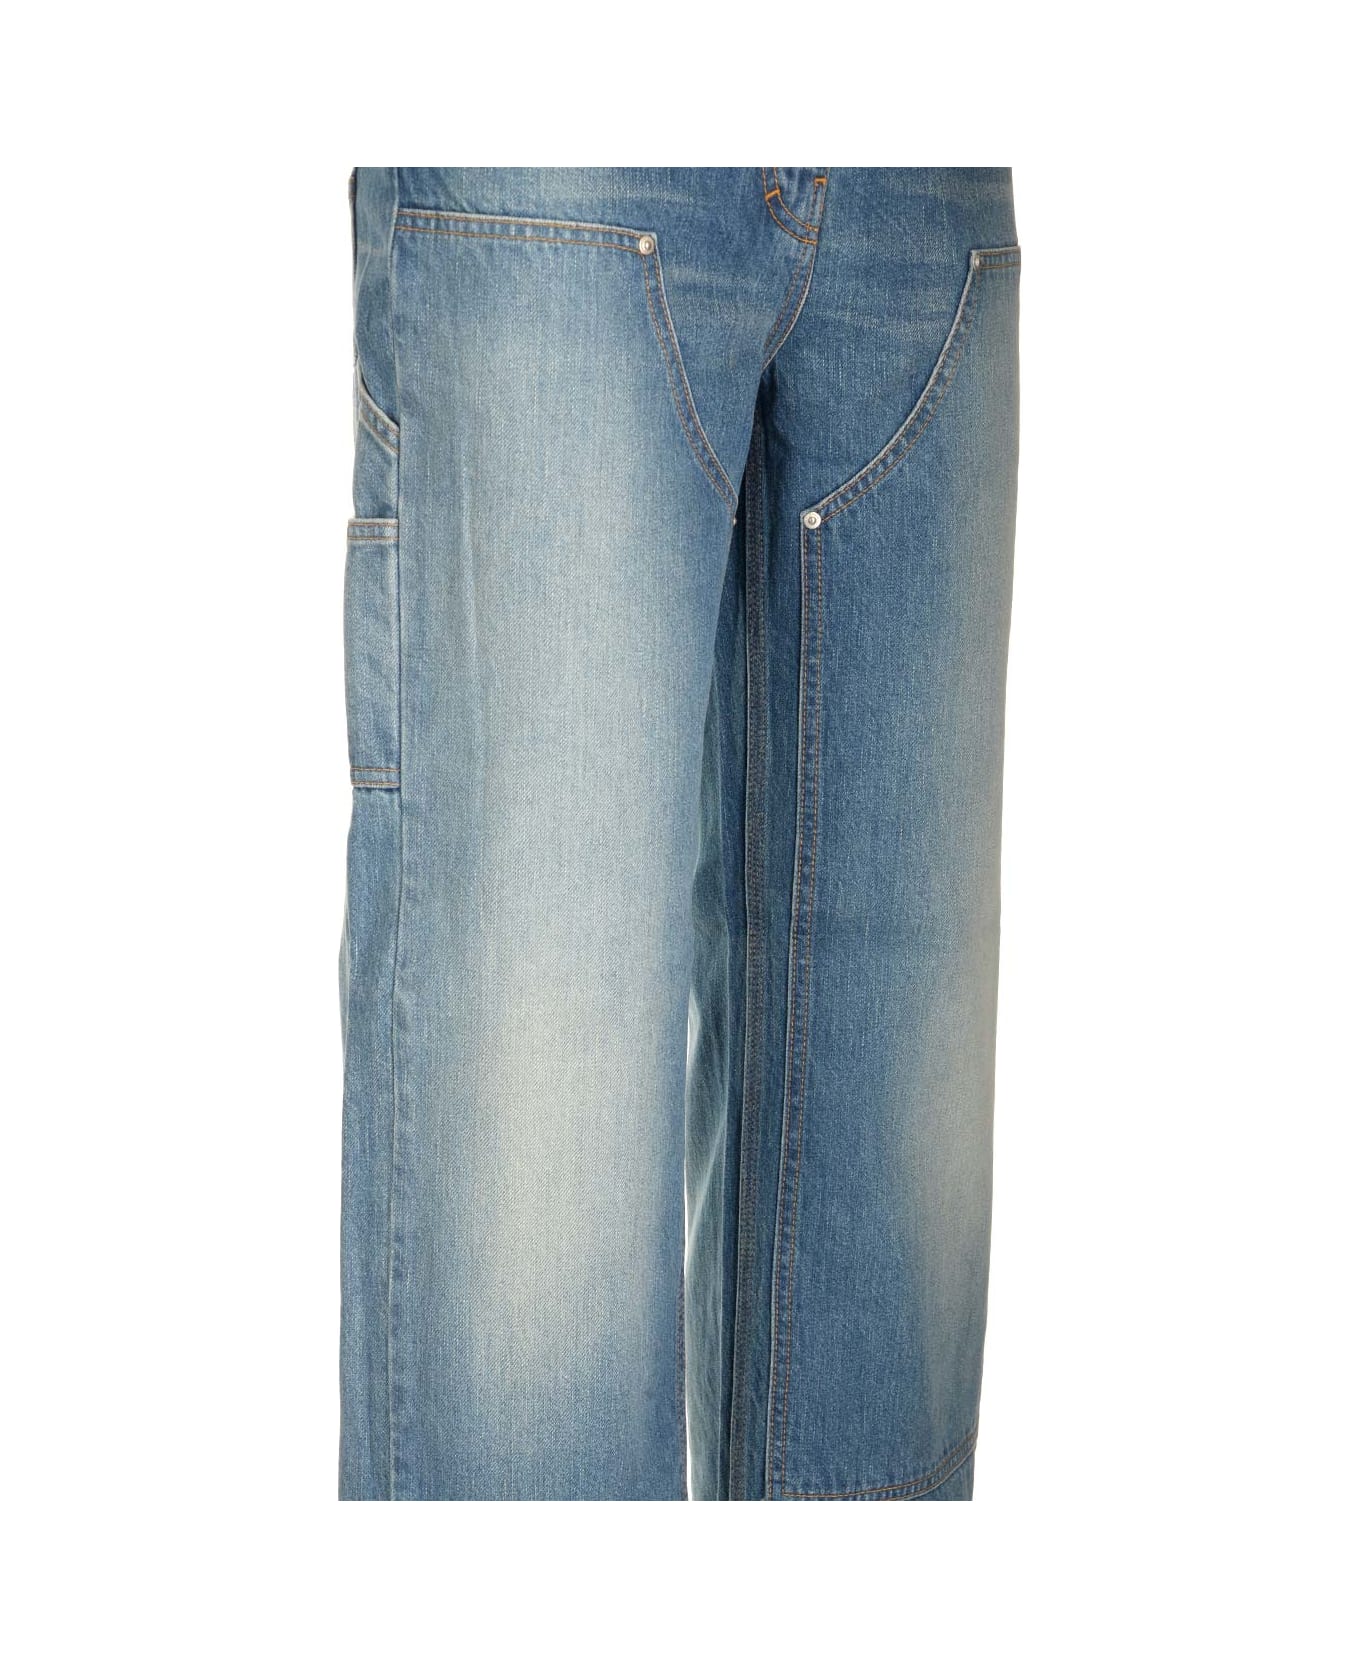 Givenchy Wide Jeans With Appliqu\u00e9s - Deep Blue